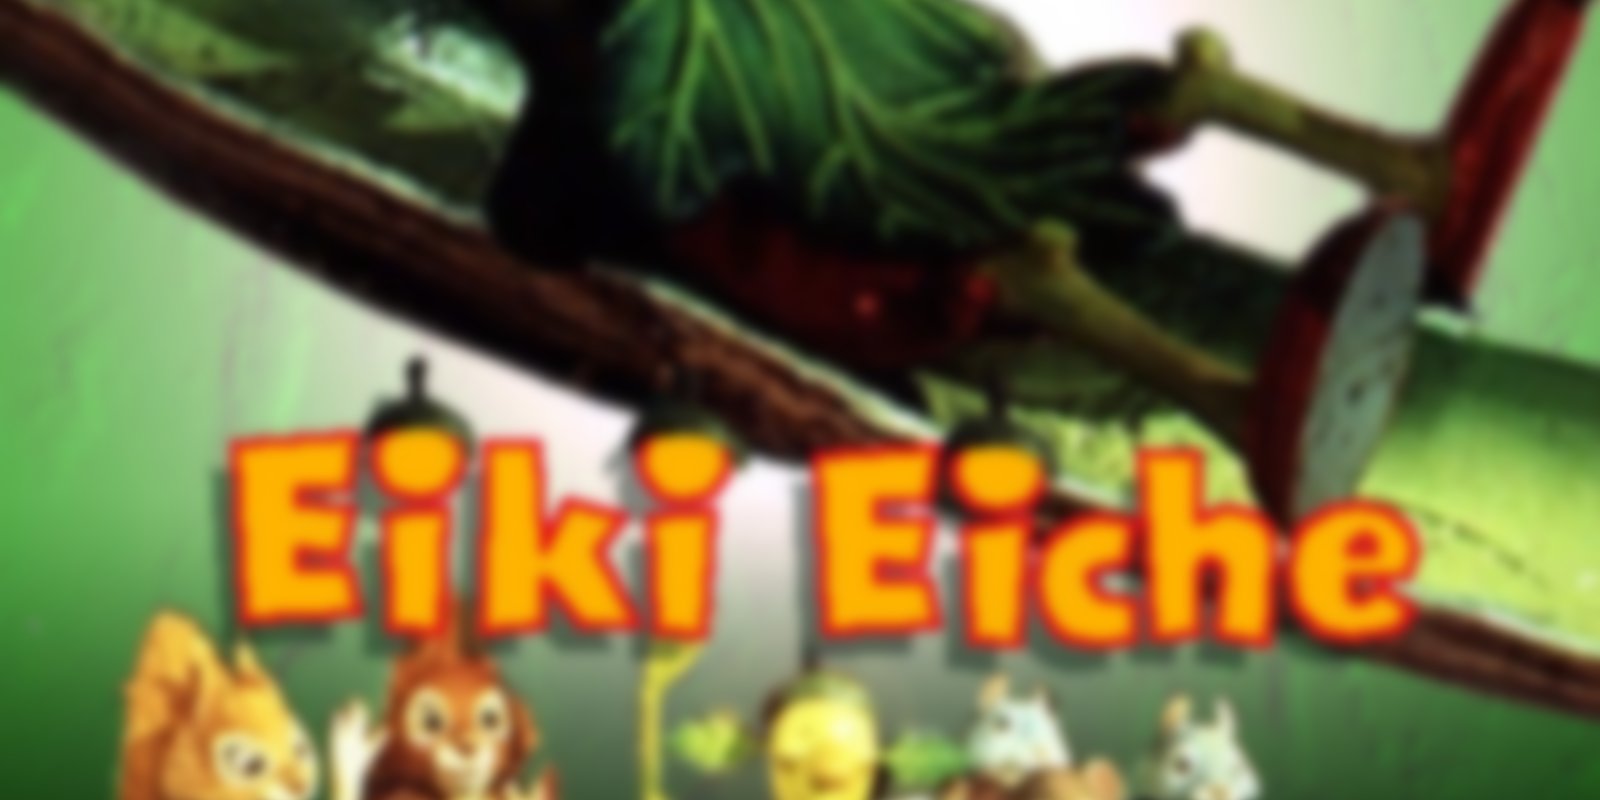 Eiki Eiche